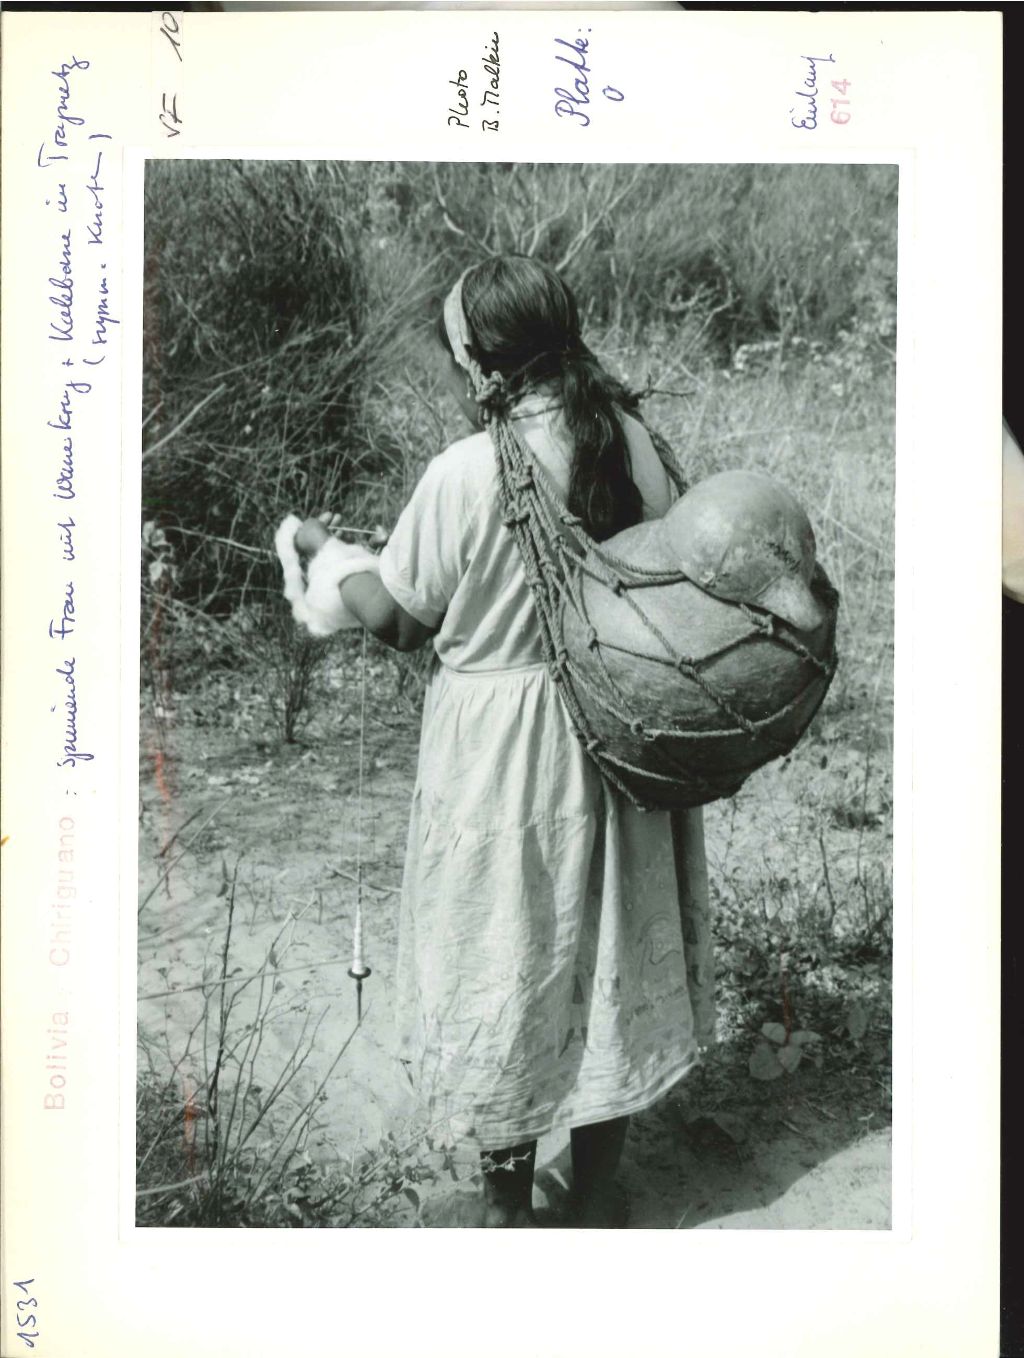 Eine lateinamerikanische Frau trägt mit einem Tragnetz eine schwere Last und spinnt dabei einen Faden.